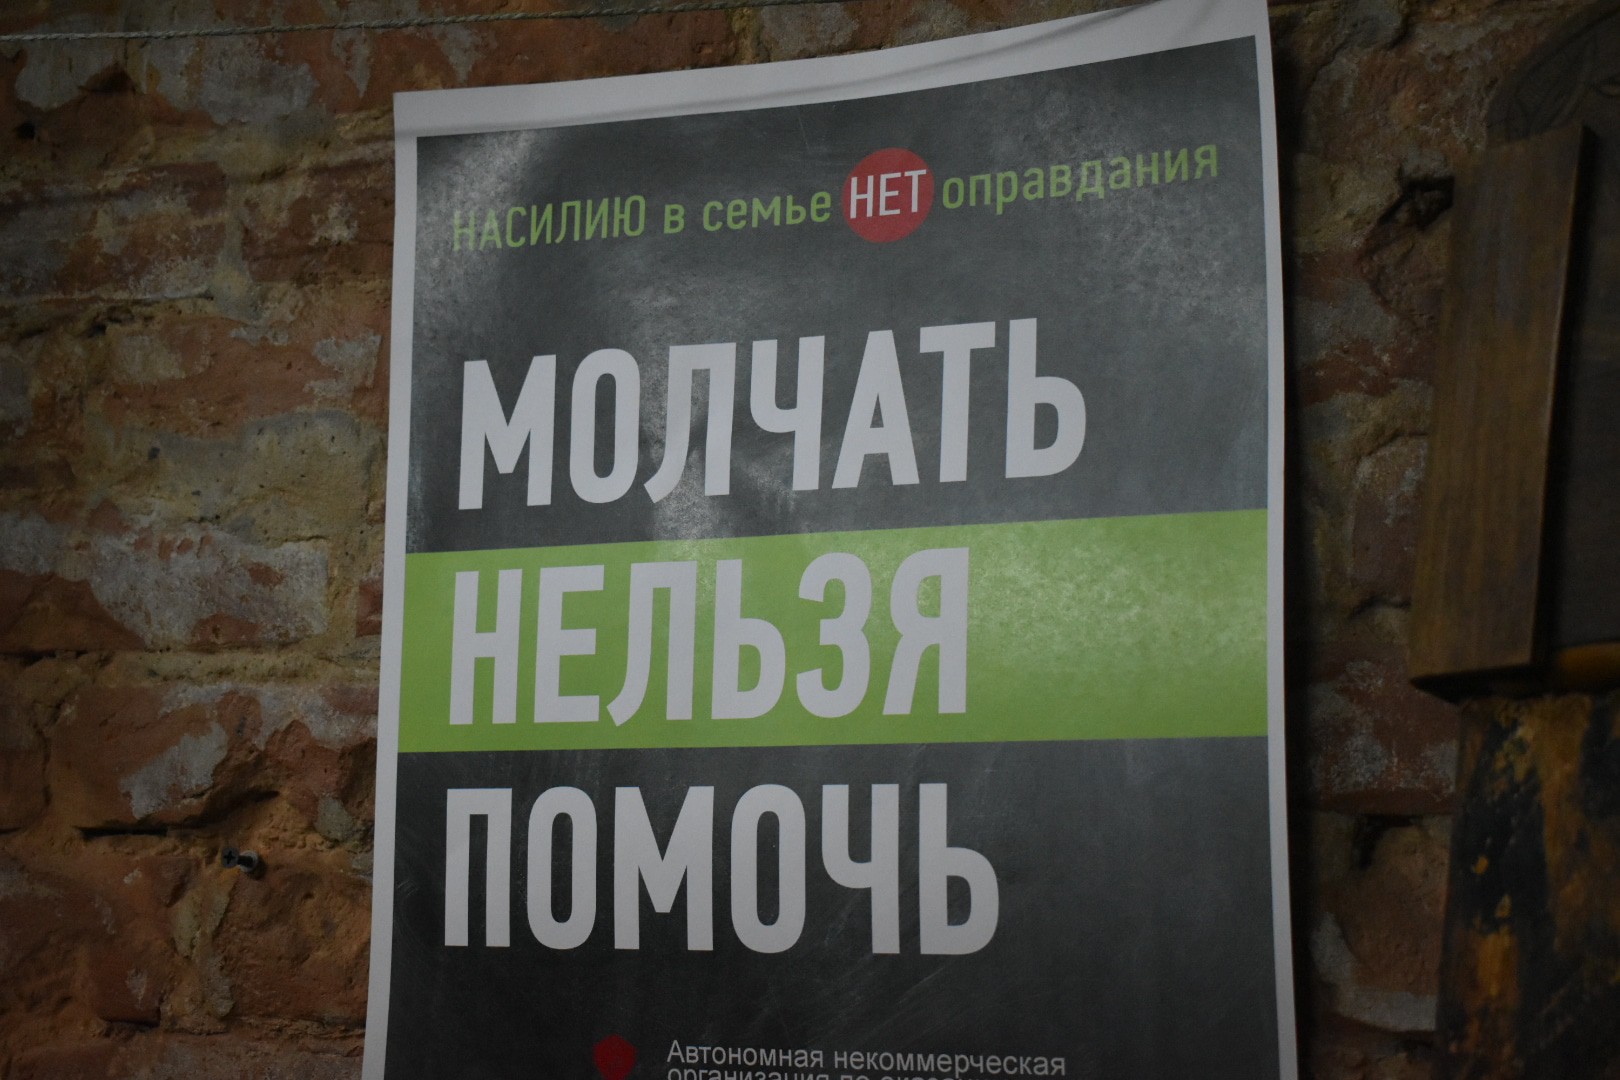 Плакат одного из ростовских кризисных центров. Фото Константина Волгина для "Кавказского узла"